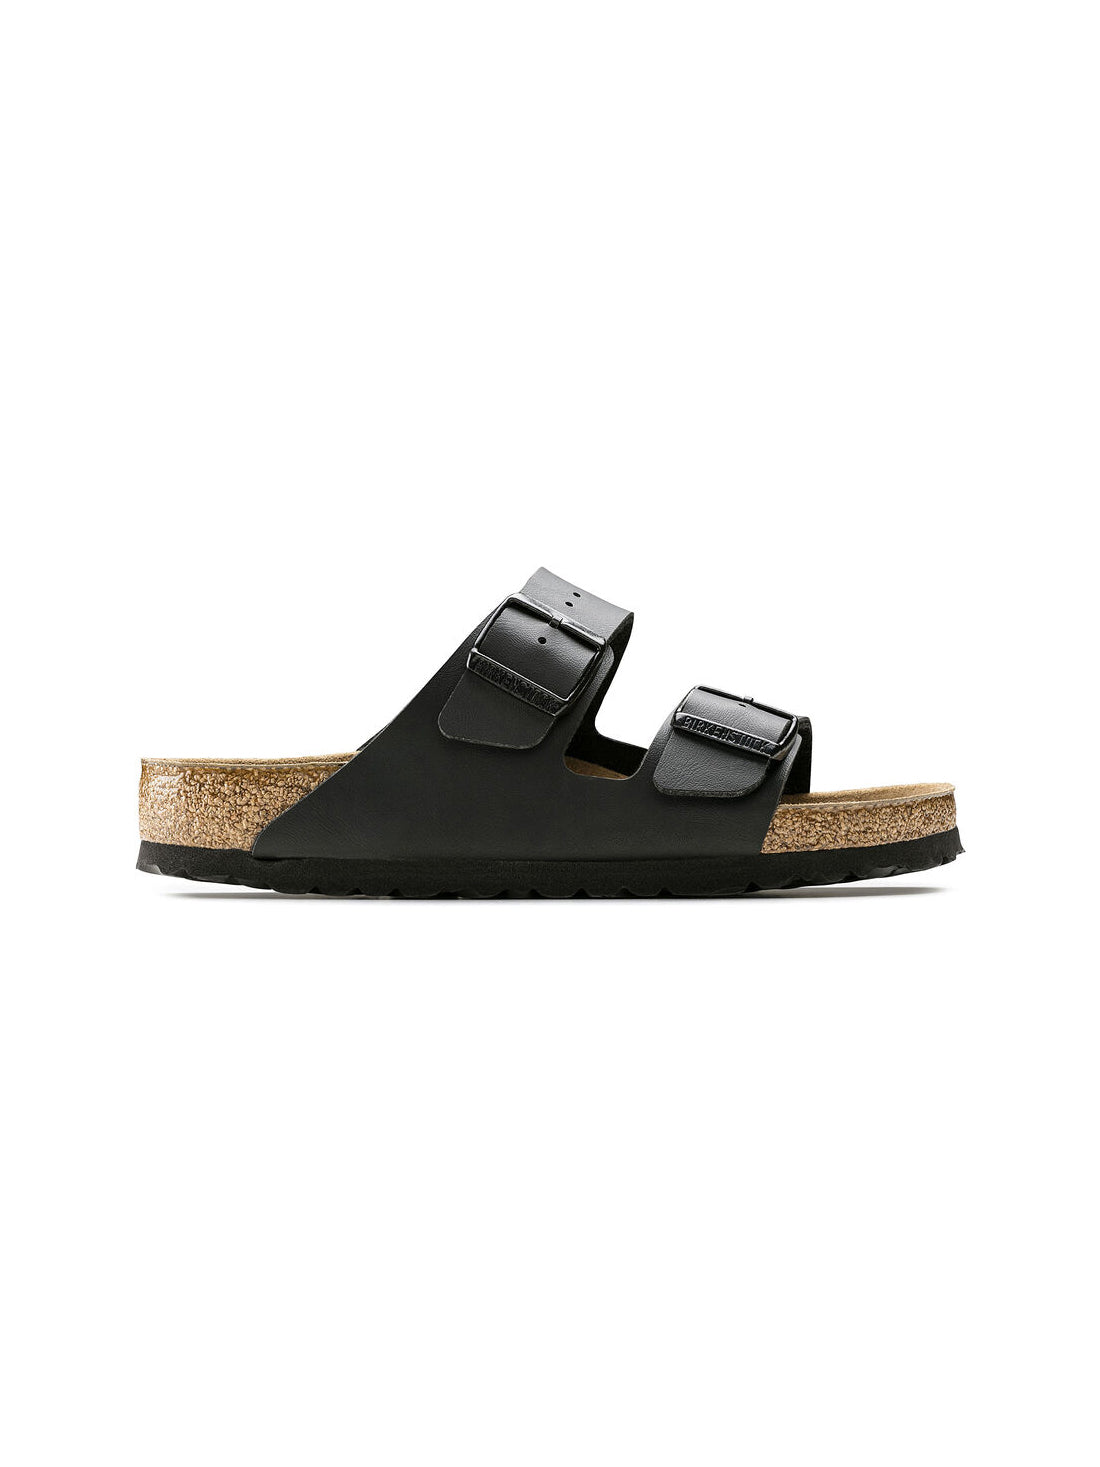 birkenstock arizona soft footbed sandal in birko-flor black regular